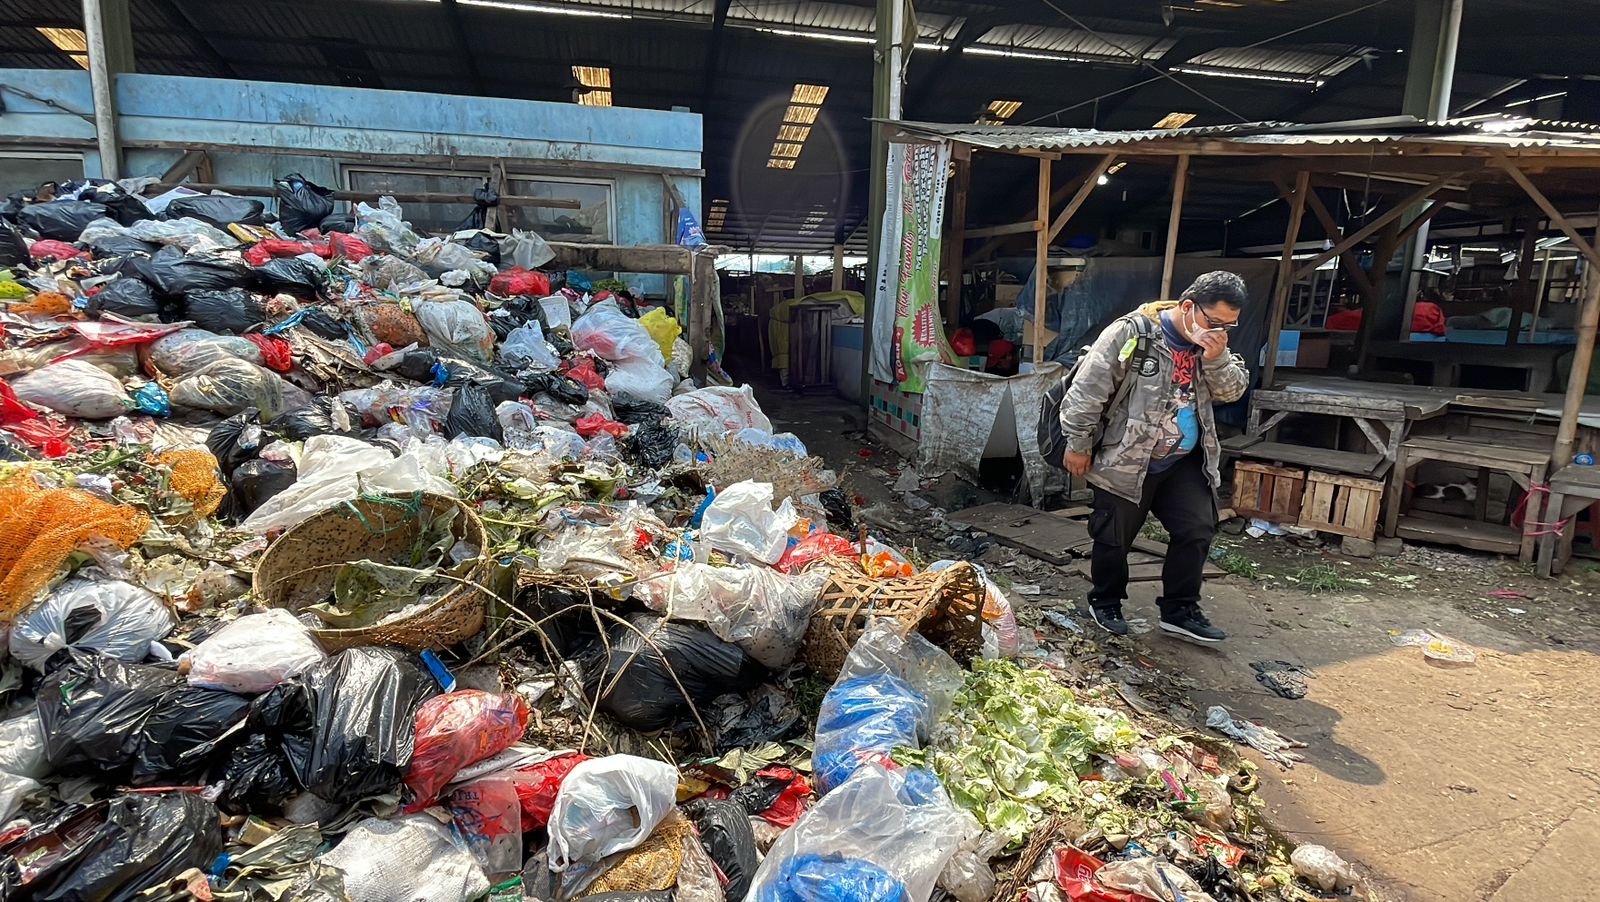 Masih Belum diangkut, Tumpukan Sampah Di Pasar Sehat Cileunyi Setinggi 2 Meter. Foto Agi Jabarekspres